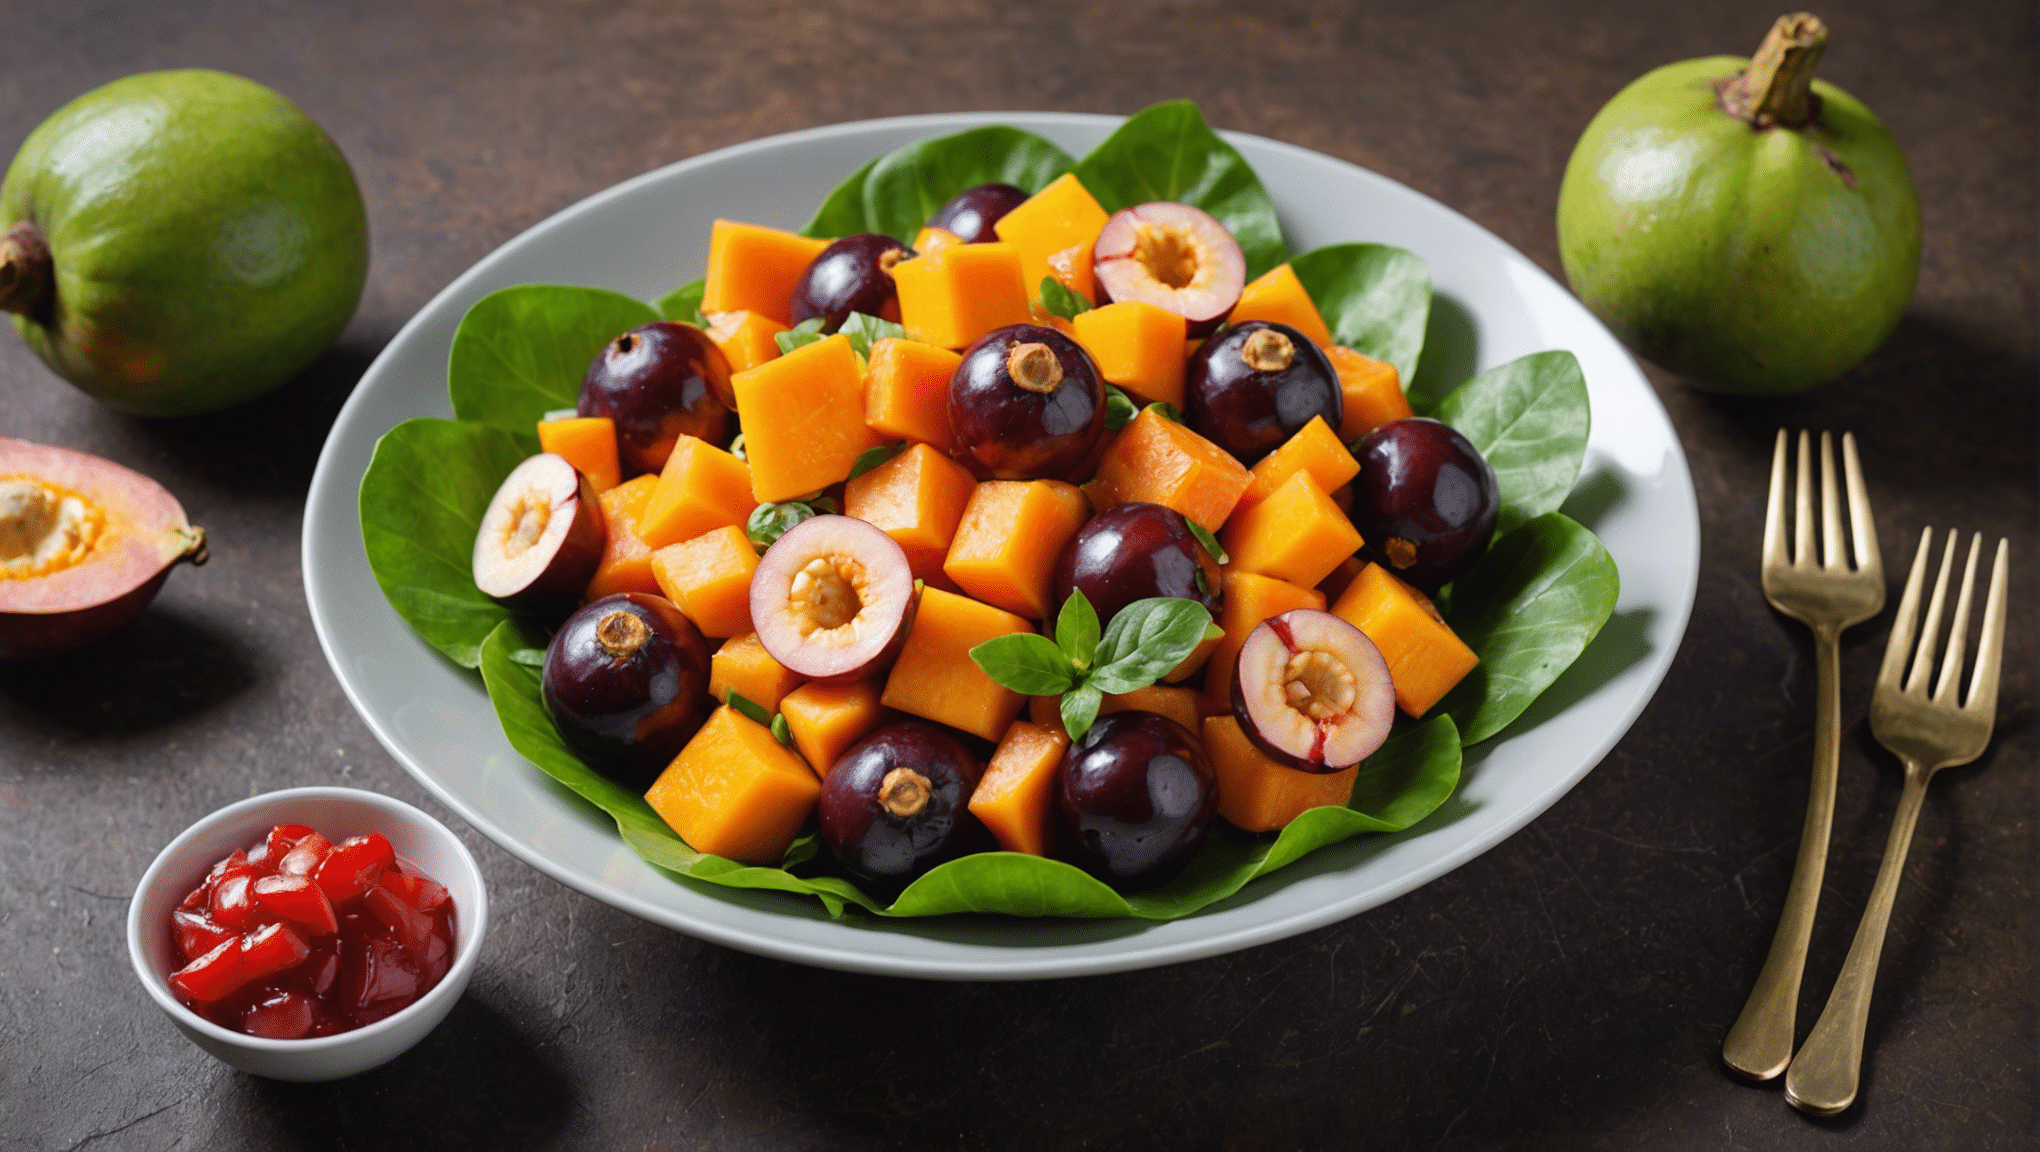 Mangosteen and Papaya Fruit Salad